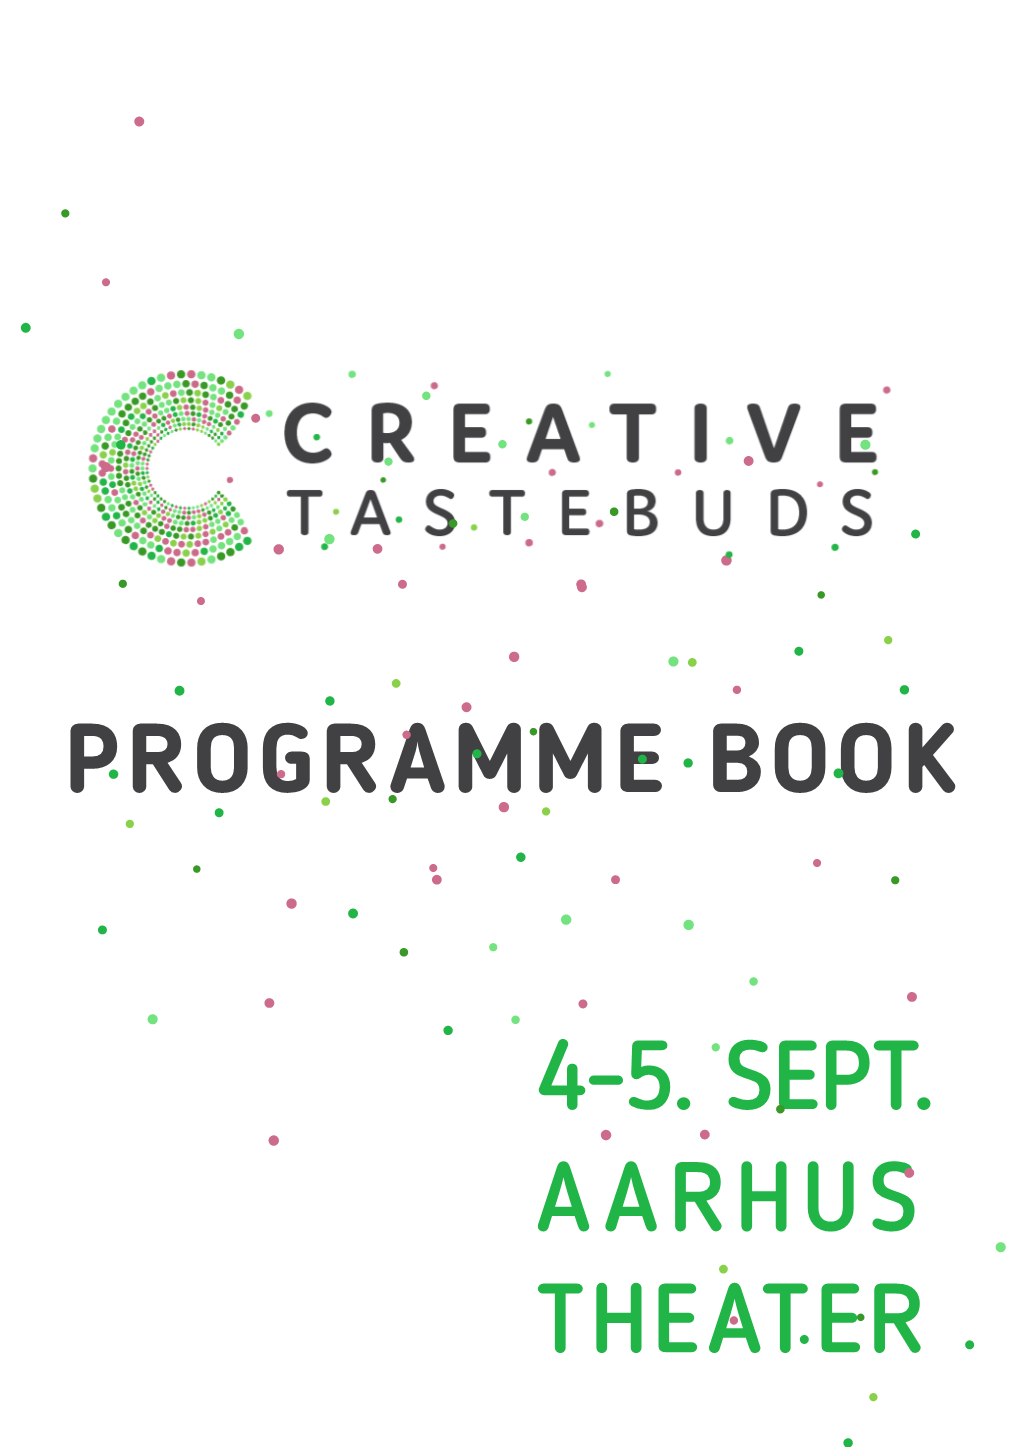 Programme Book 4-5. Sept. Aarhus Theater